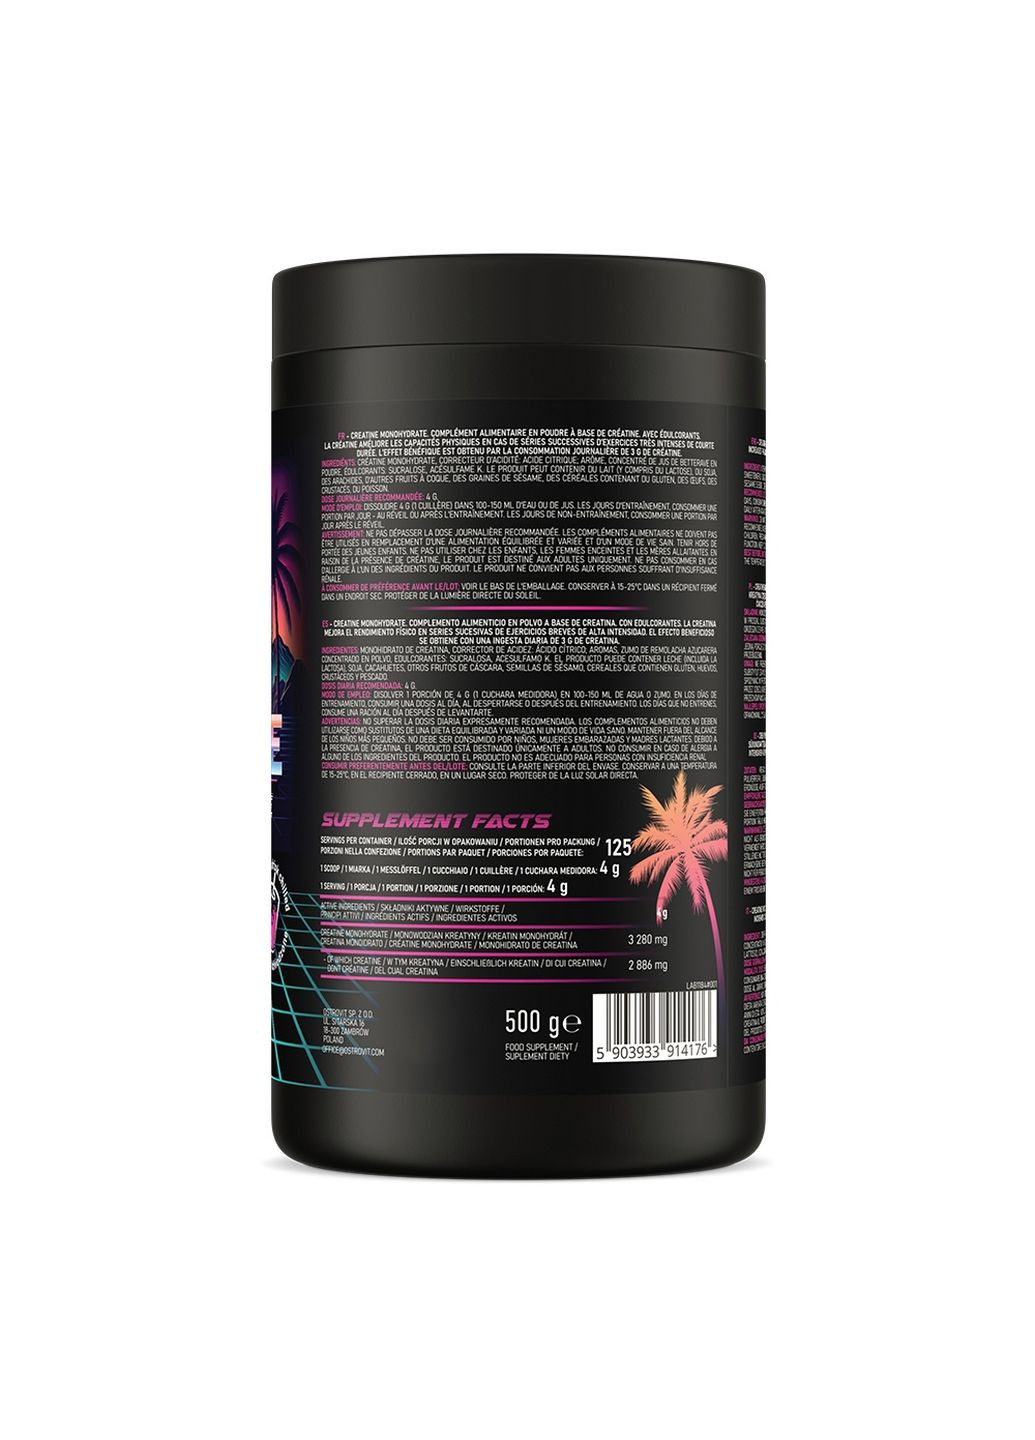 Креатин Creatine Monohydrate Miami Vibes, 500 грам Ostrovit (293342485)